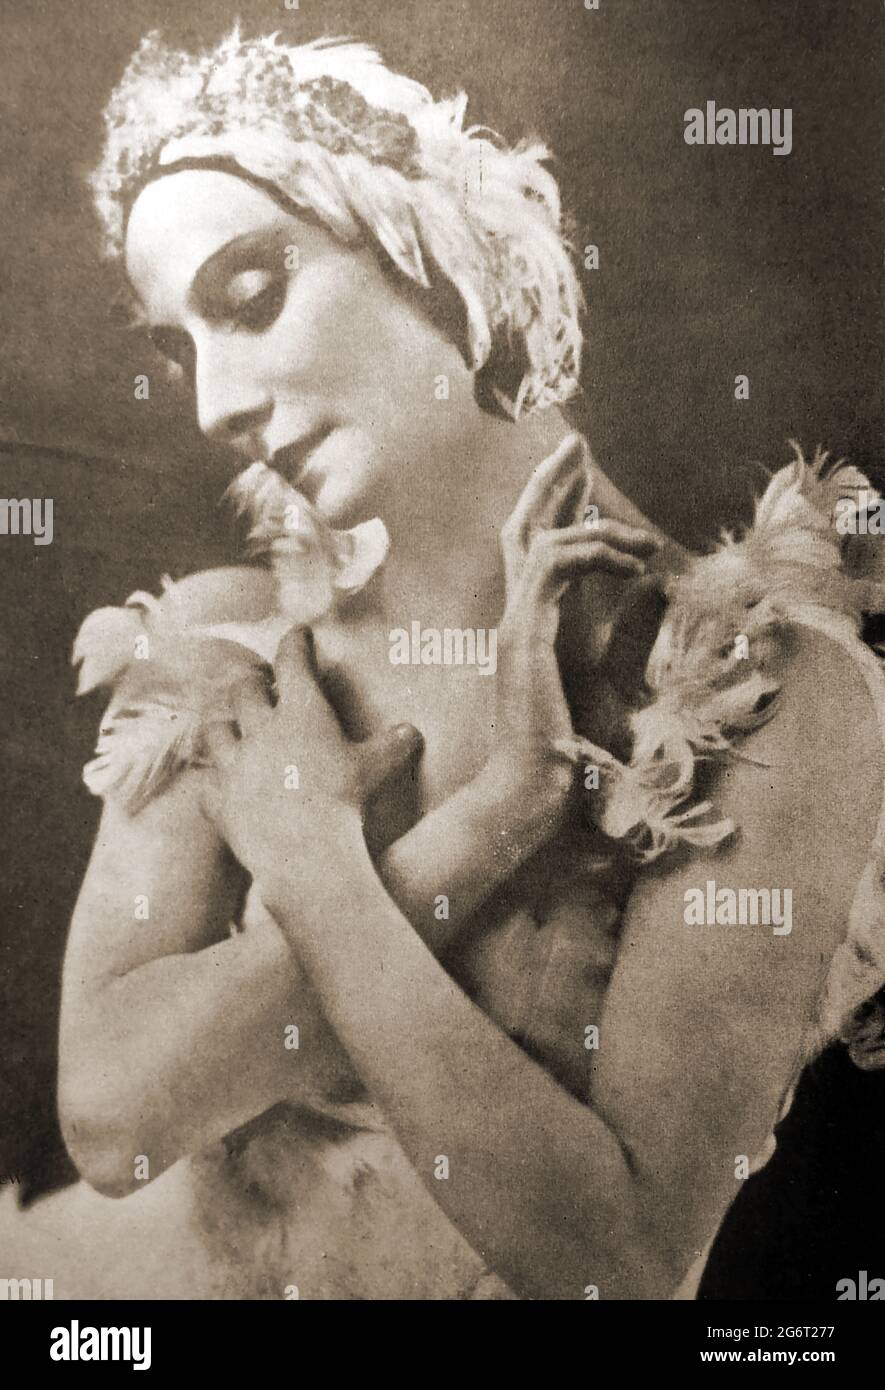 Un ritratto degli anni '40 di Anna Pavlova che danzava nel balletto 'le Cygne. Liberamente basato sul mito classico di Leda e lo Swan le Cygne è un balletto one-atto, con coreografia di Mariquita, uno scenario di Catulle Mendès, e la musica di Charles Lecocq. Fu rappresentata per la prima volta a Parigi all'Opéra-Comique il 20 aprile 1899. Nata Anna Matveyevna Pavlova ; Anna Pavlovna Pavlova nacque in Russia, dove era conosciuta come Анна Павловна Павлова. Era una principale artista del Balletto Imperiale Russo e dei Balletti Russi di Sergei Diaghilev ed era famosa per la sua danza del cigno morente . Foto Stock